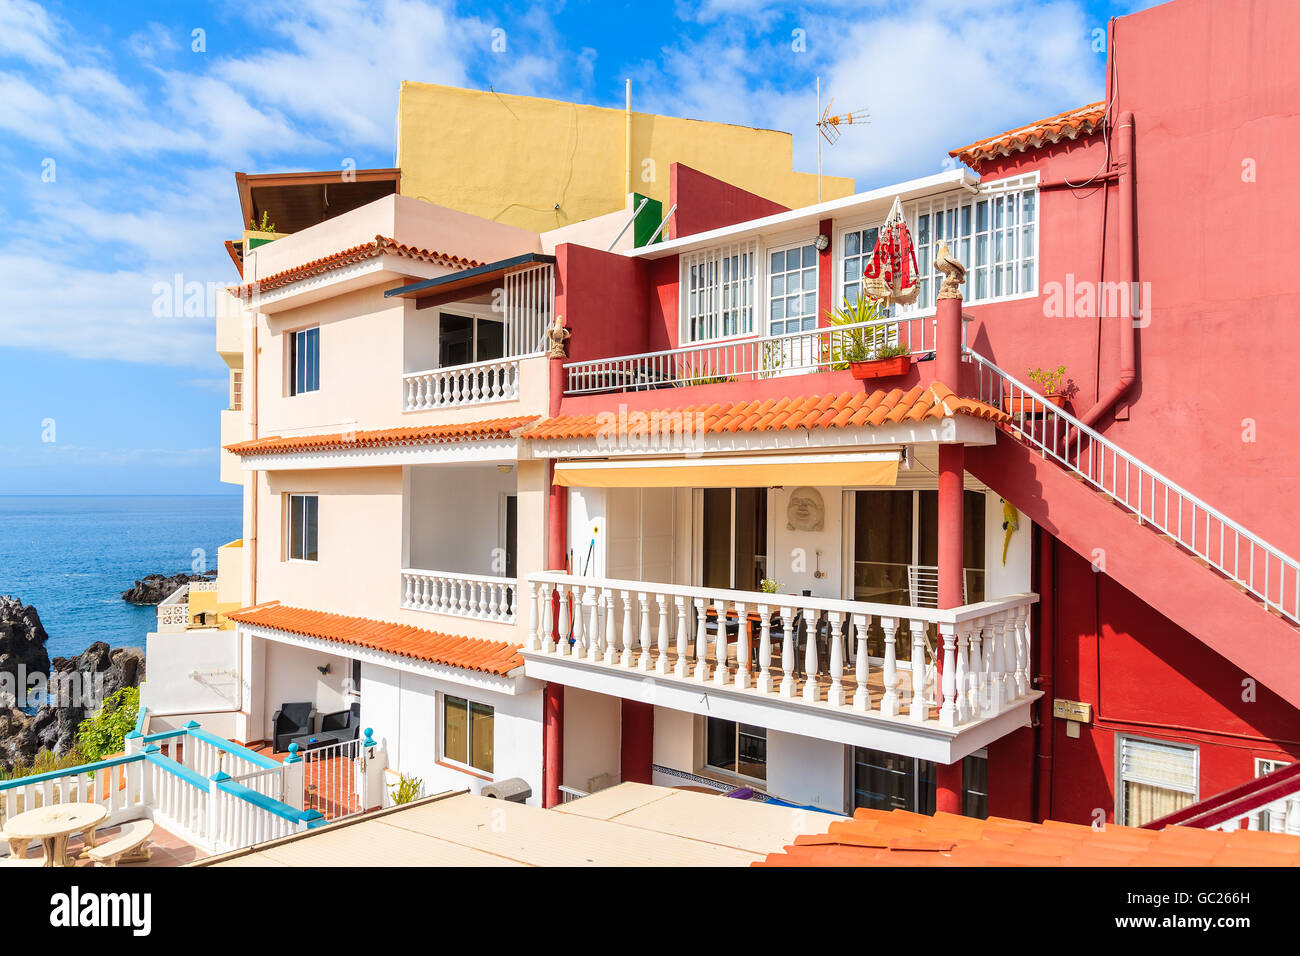 La ville d'ALCALA, TENERIFE ISLAND - NOV 17, 2015 : Maison avec appartements de vacances dans la ville de Alcala sur côte de Ténérife, Canaries Banque D'Images